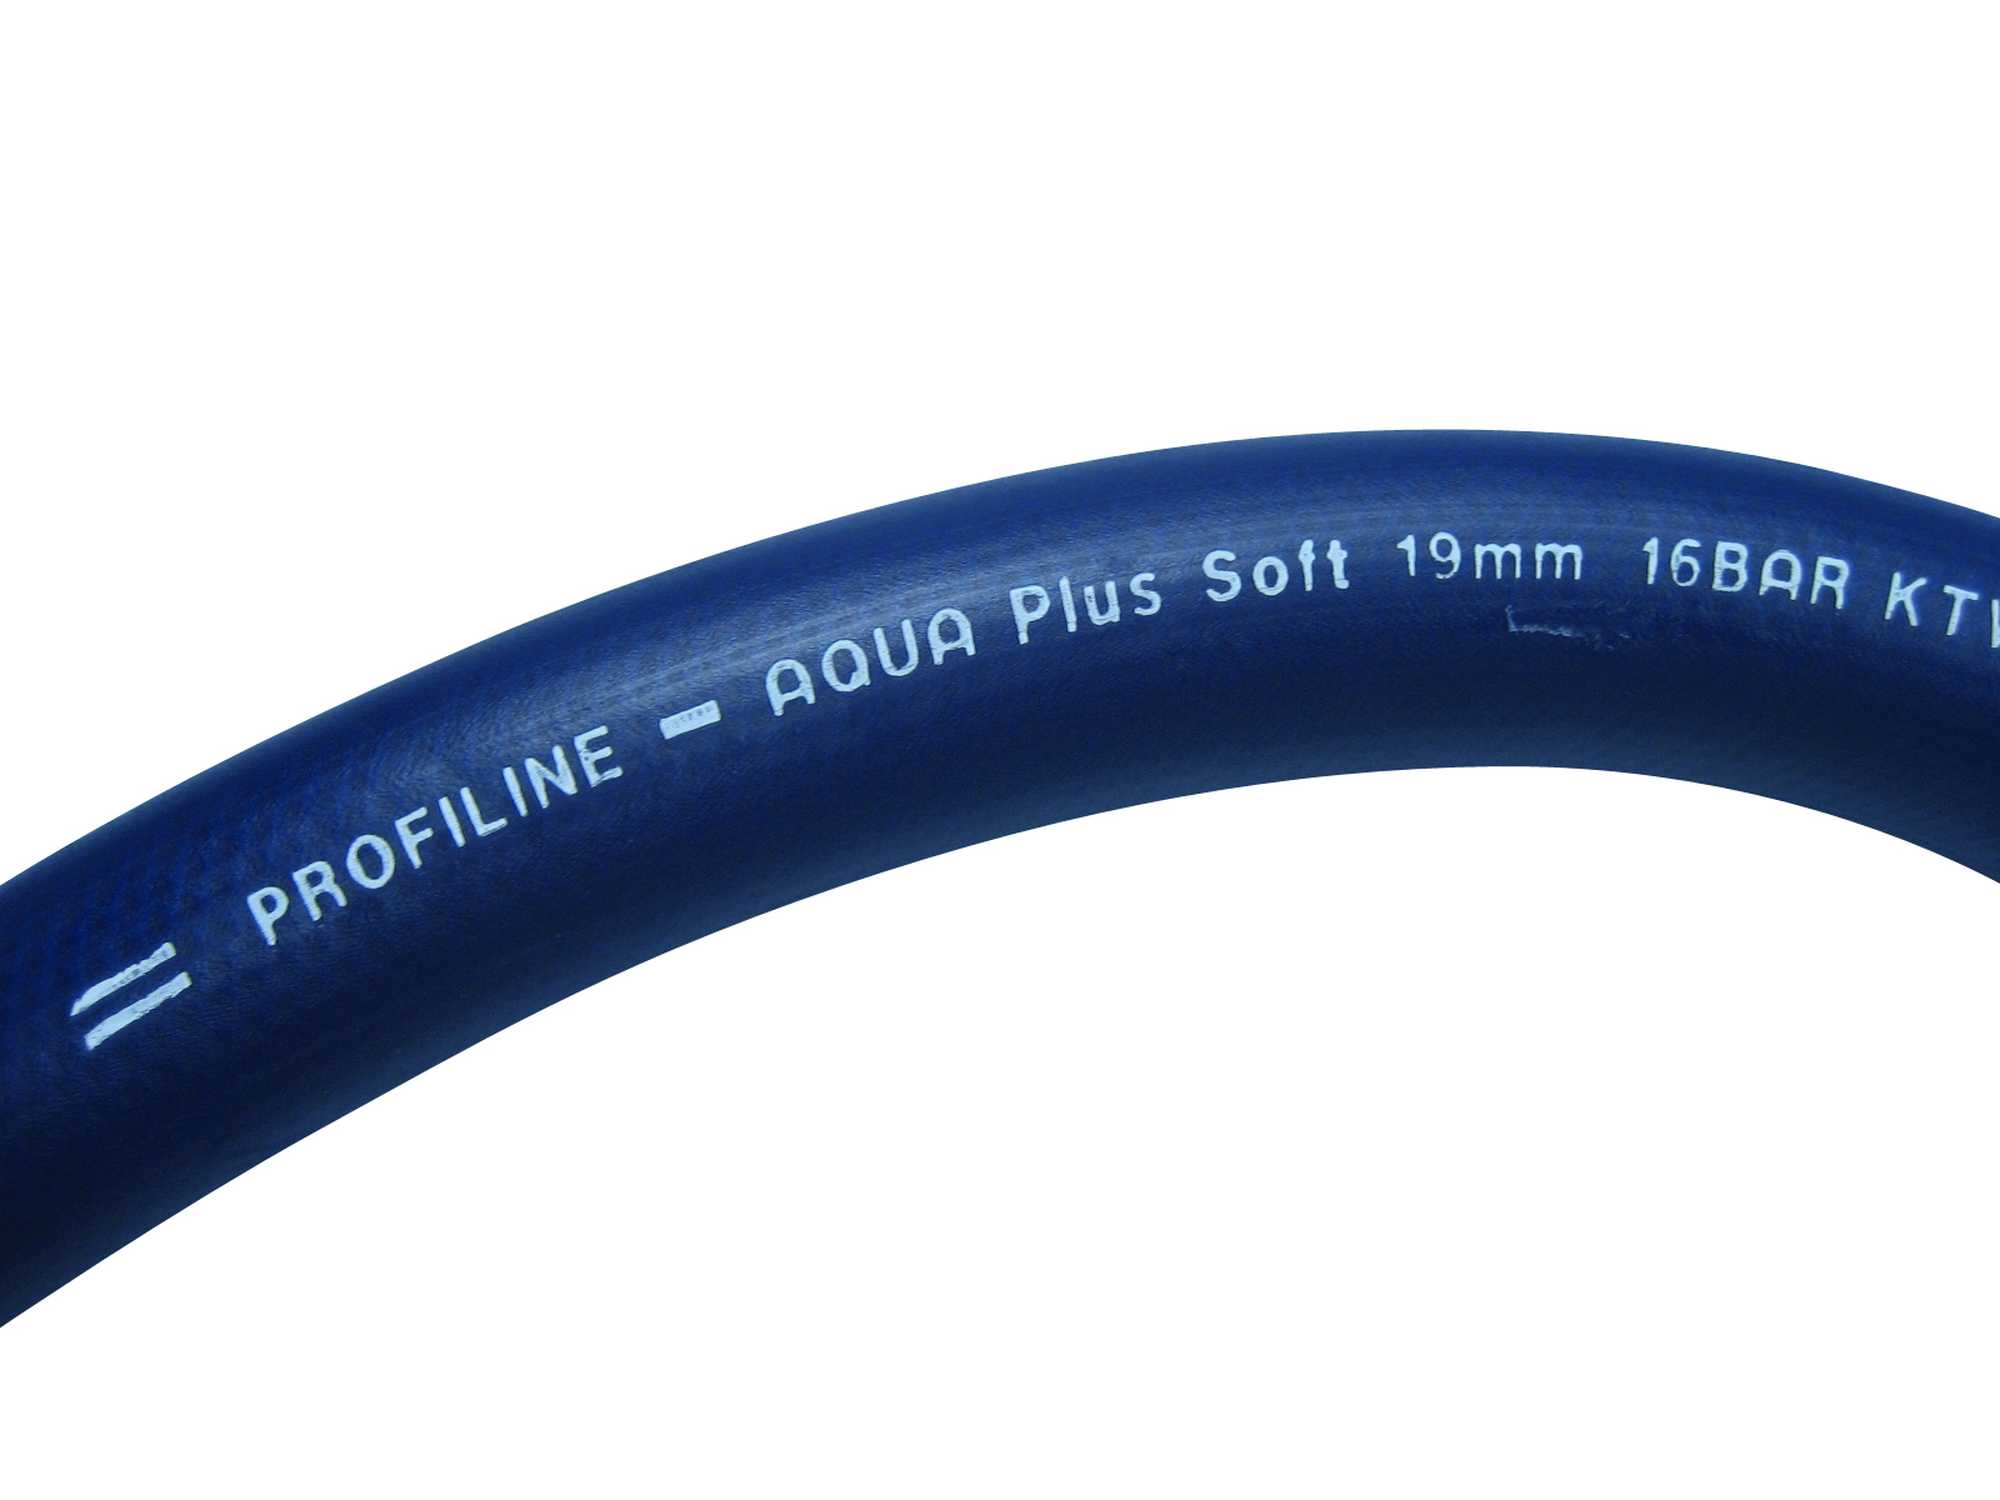 Profiline-Aqua Plus Soft 13mm (1/2") als Meterware, 5m - 50m Länge, Trinkwasserschlauch nach KTW-A, W270 